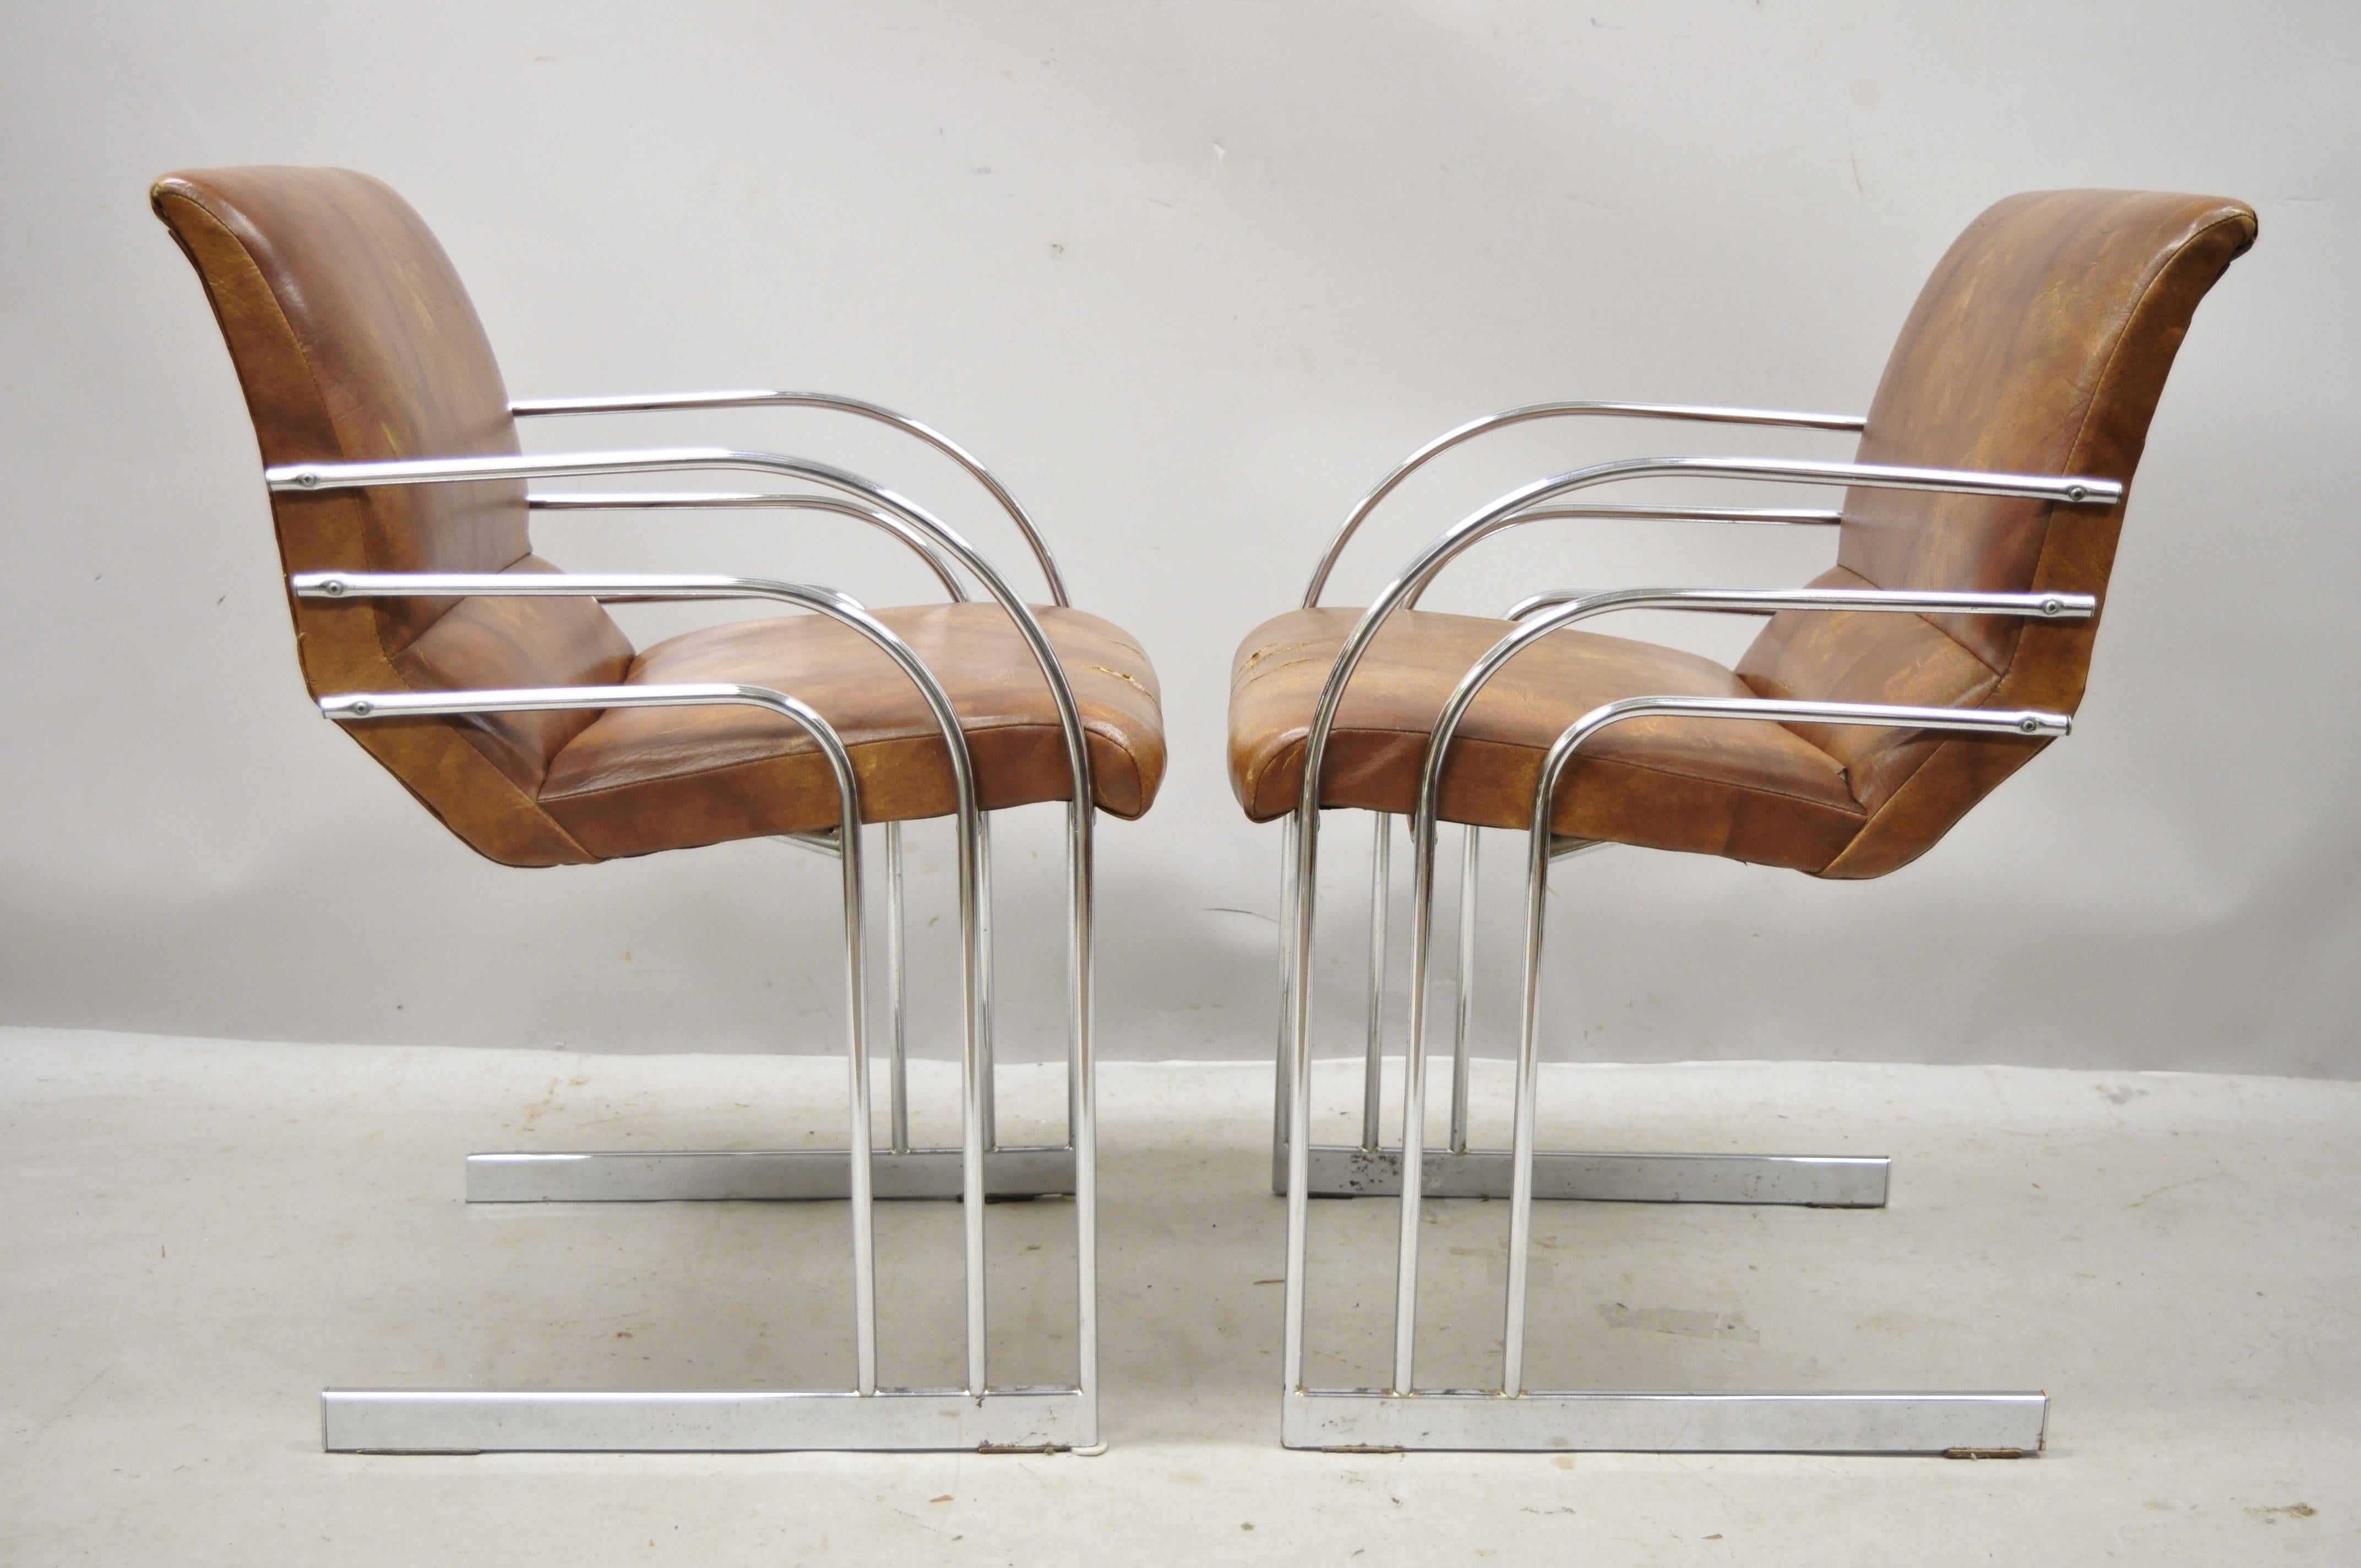 Mitte des Jahrhunderts Moderne Art Deco Chrom Freischwinger Milo Baughman Stil Sessel - ein Paar. Artikel mit verchromtem Freischwinger-Gestell, geschwungenes Art-Déco-Design, sehr schöner Vintage-Artikel, klare modernistische Linien, schlanke